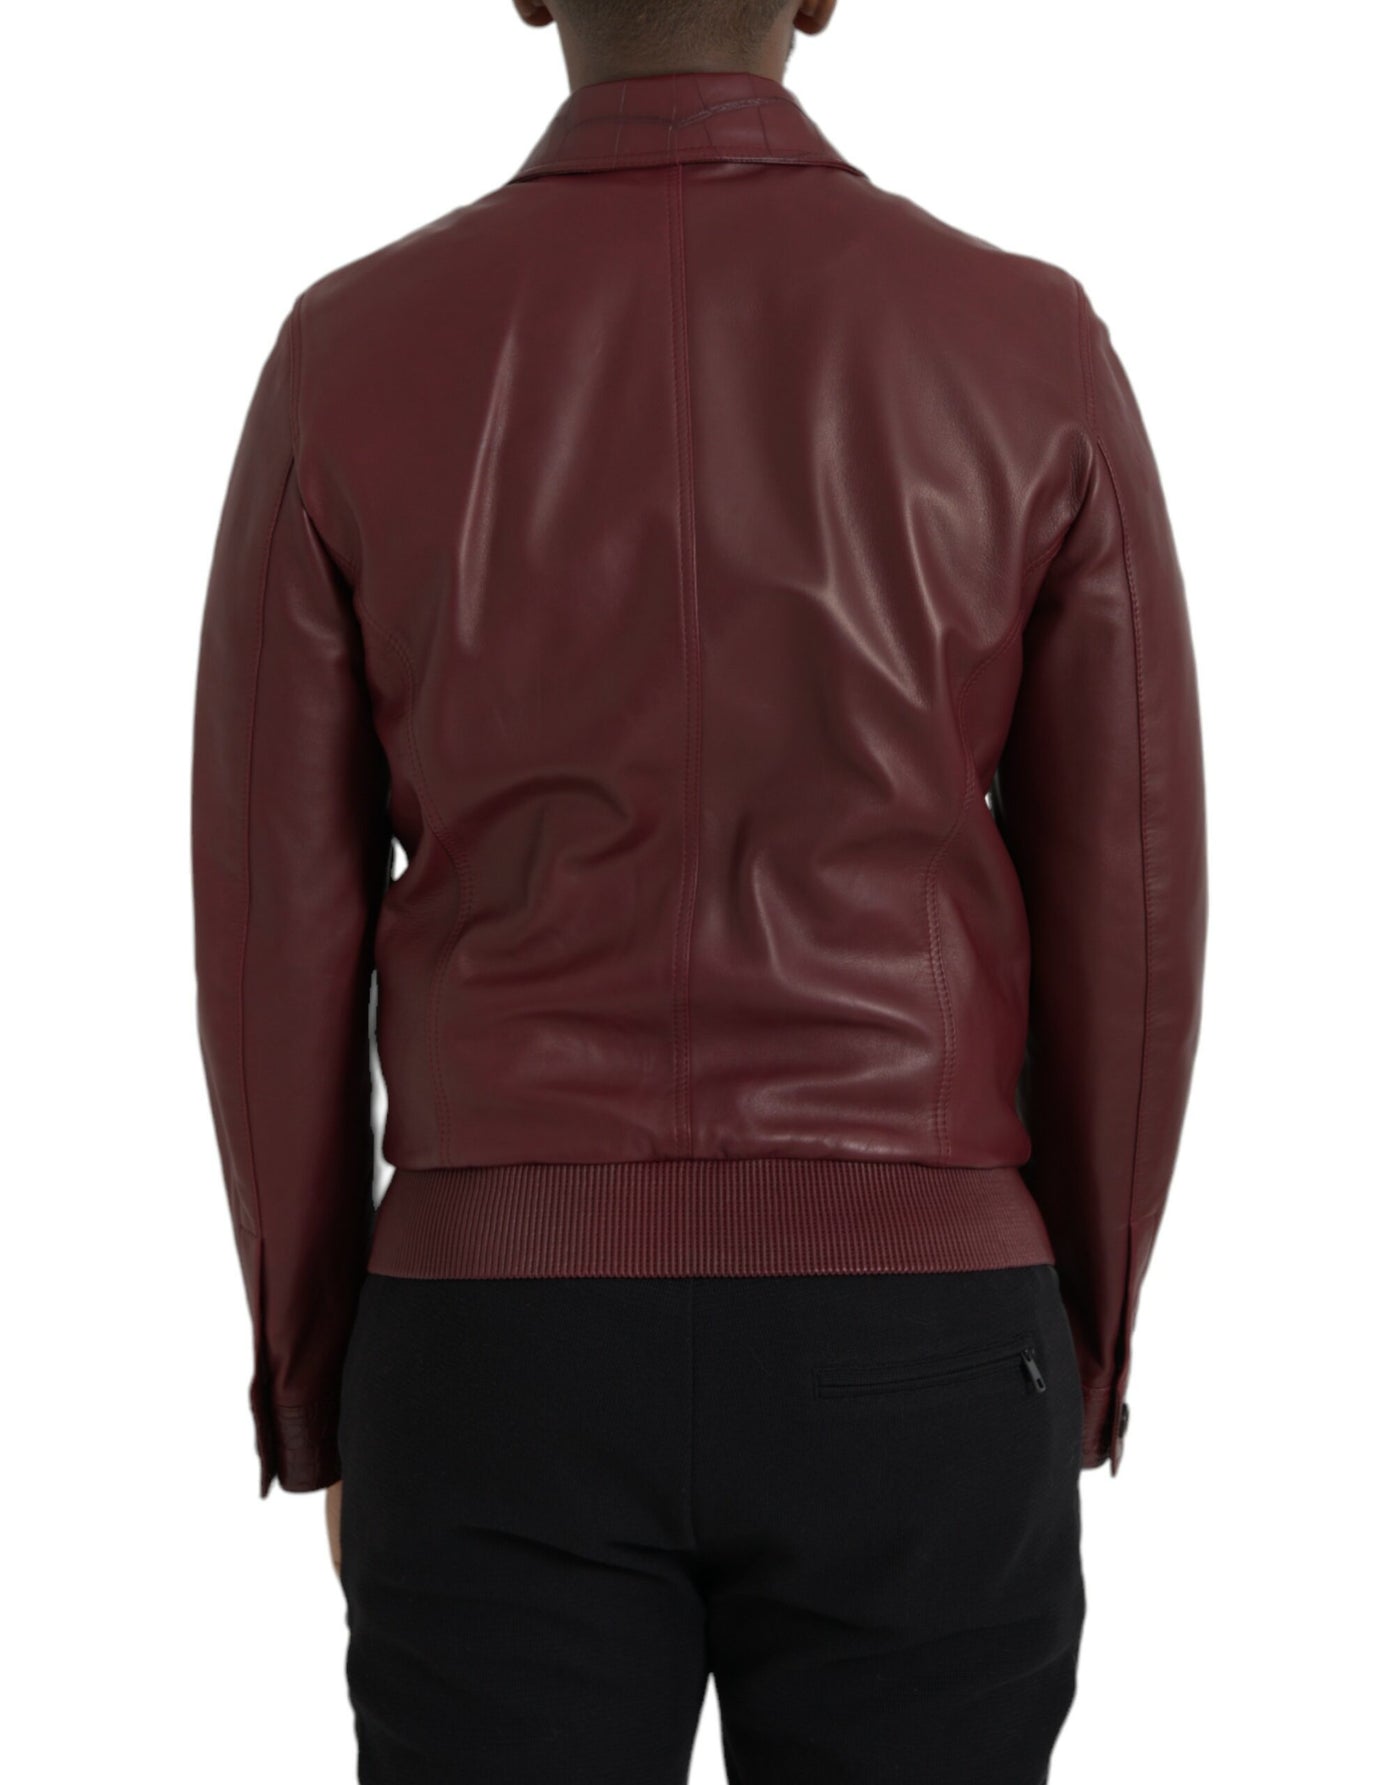 Maroon Exotic Leather Zip Biker Coat Jacket